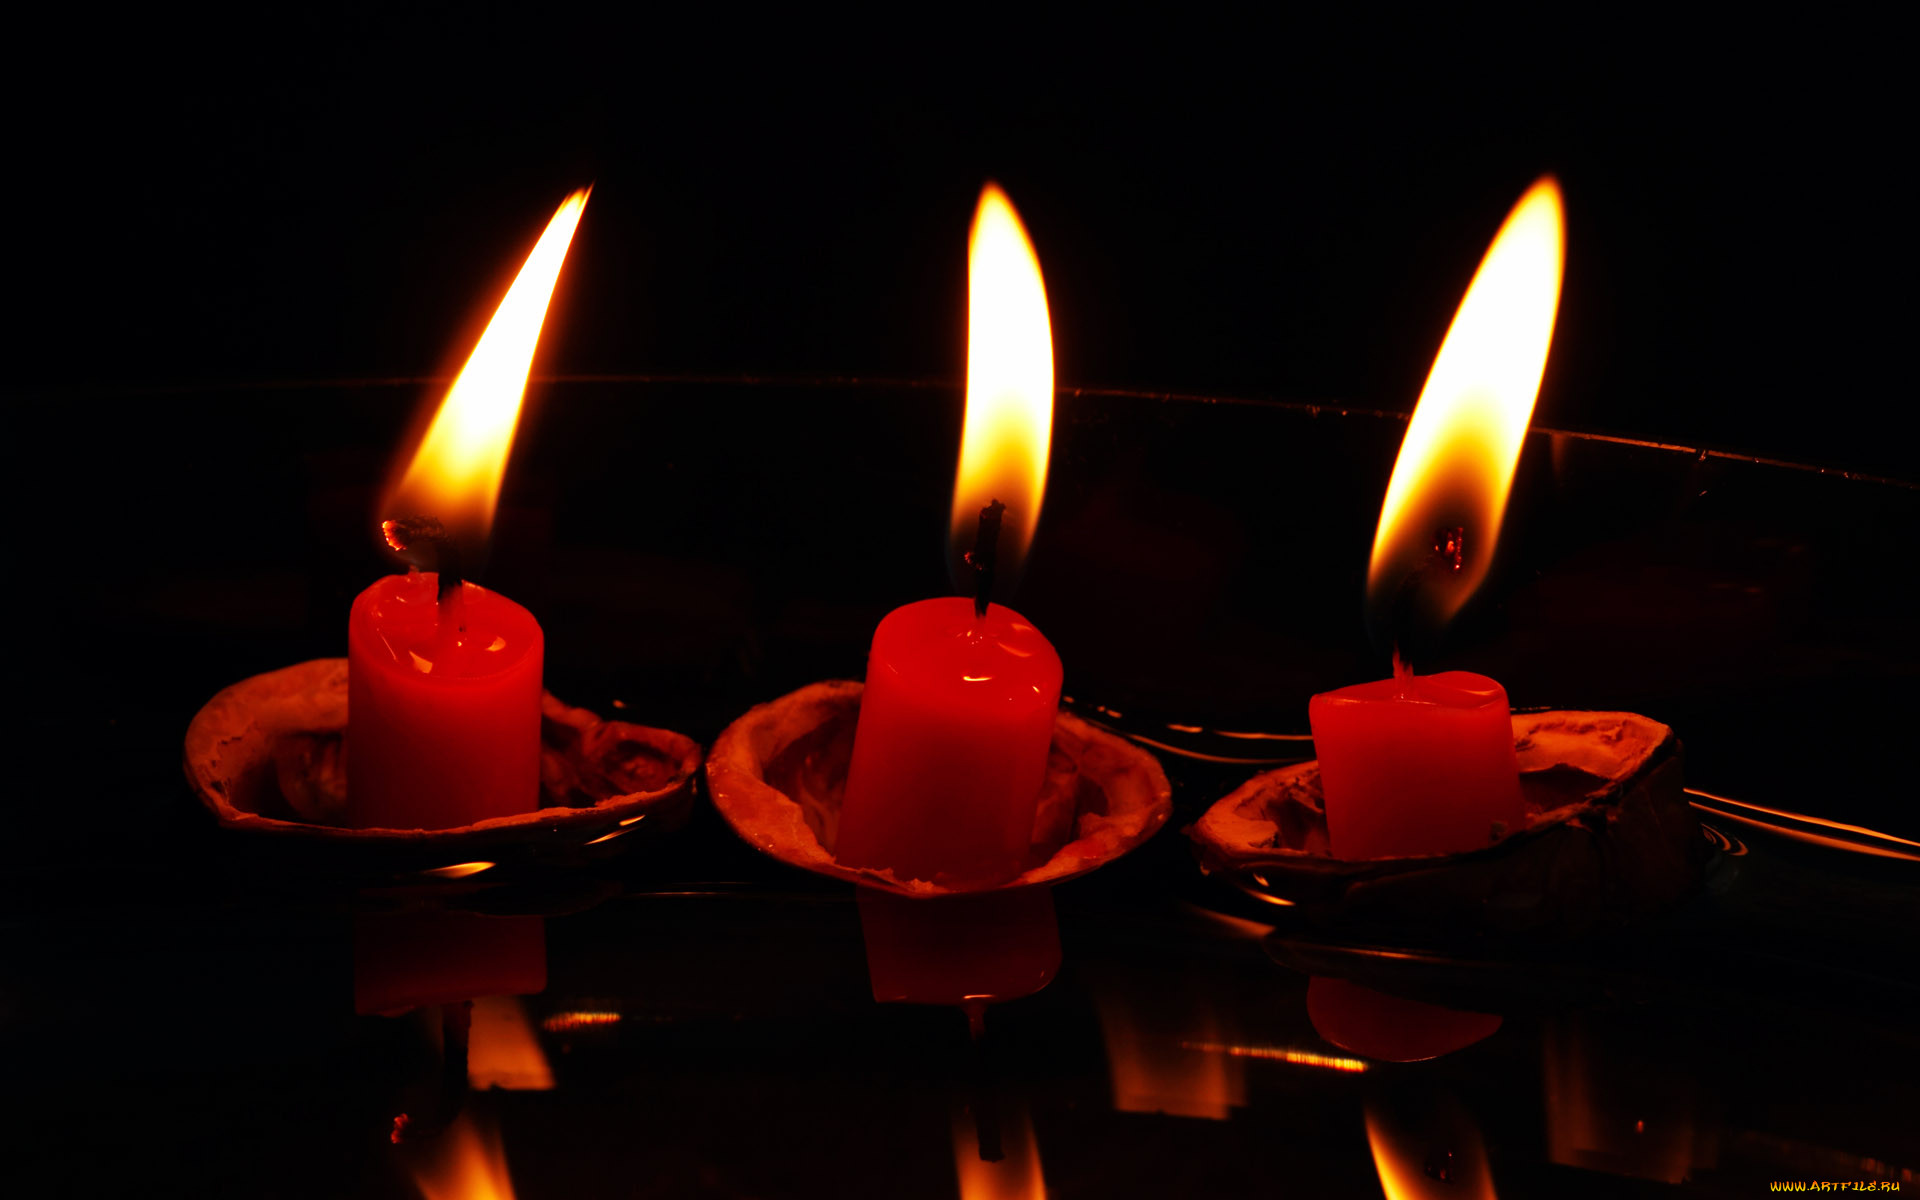 Одновременно зажгли 3 свечи 1. Романтические свечи. Горящие свечи. Красивые свечи. Три свечи.